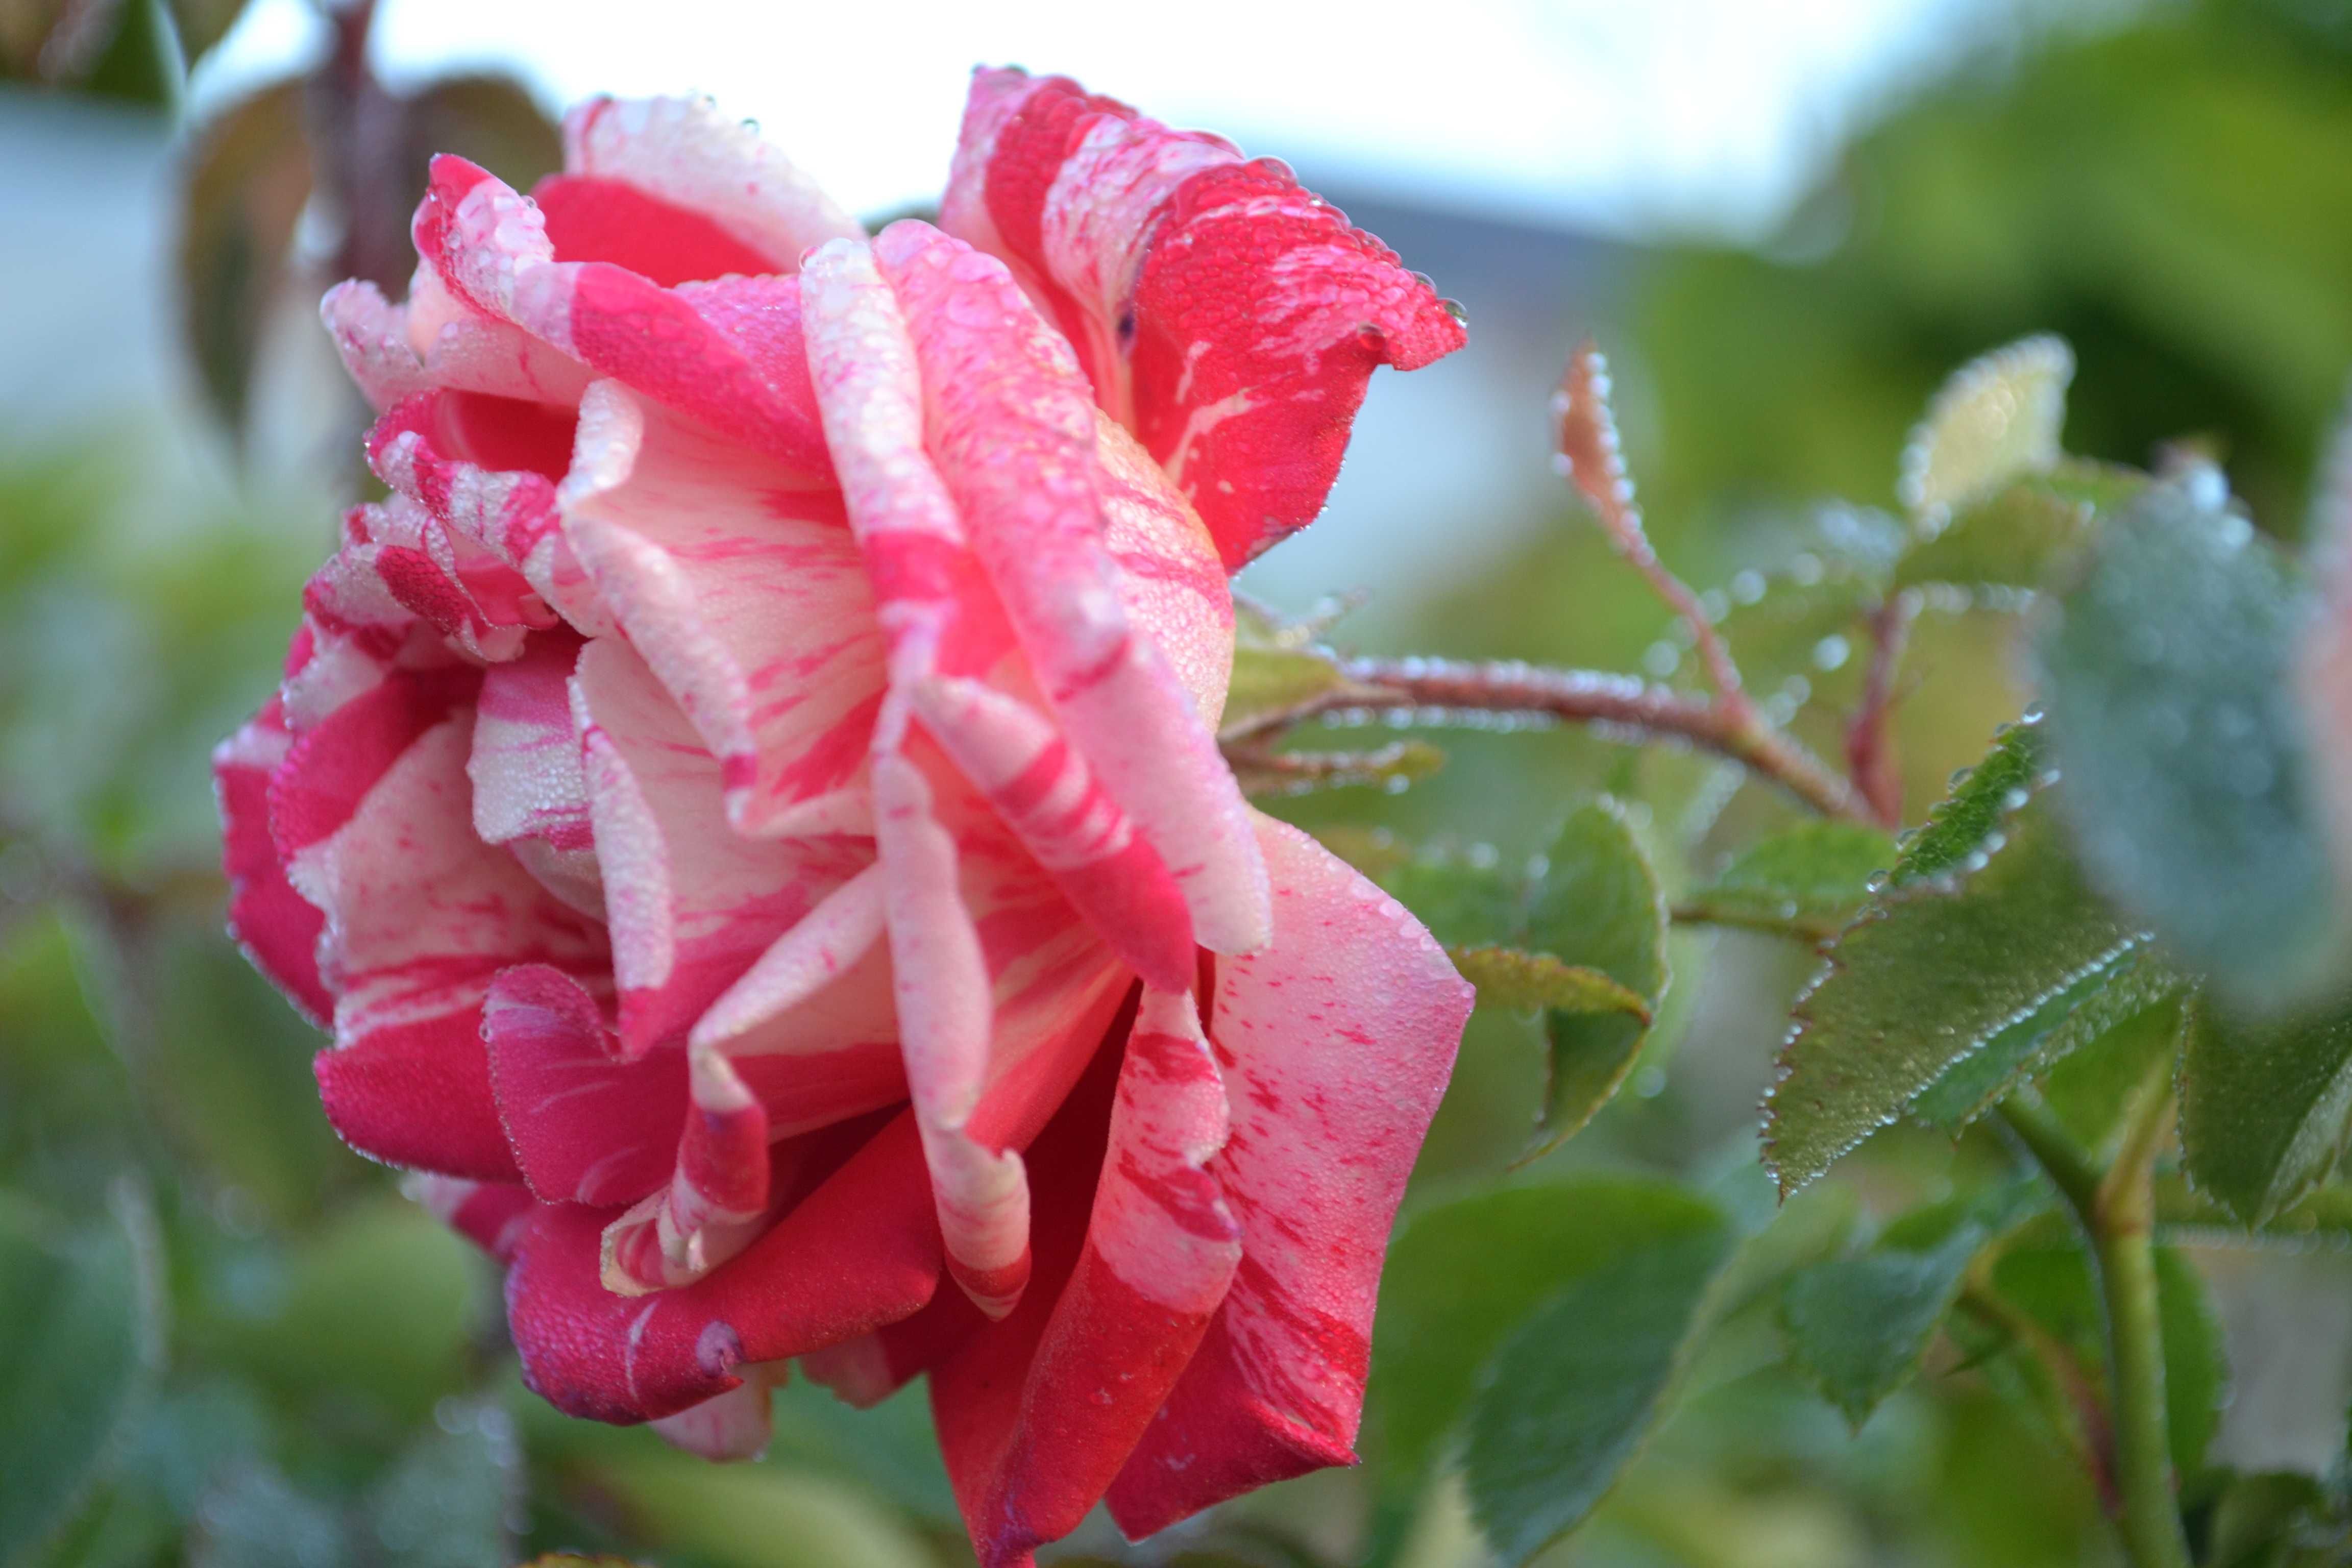 róża wielkokwiatowa na pniu, pnące i krzewiaste mix kolorów